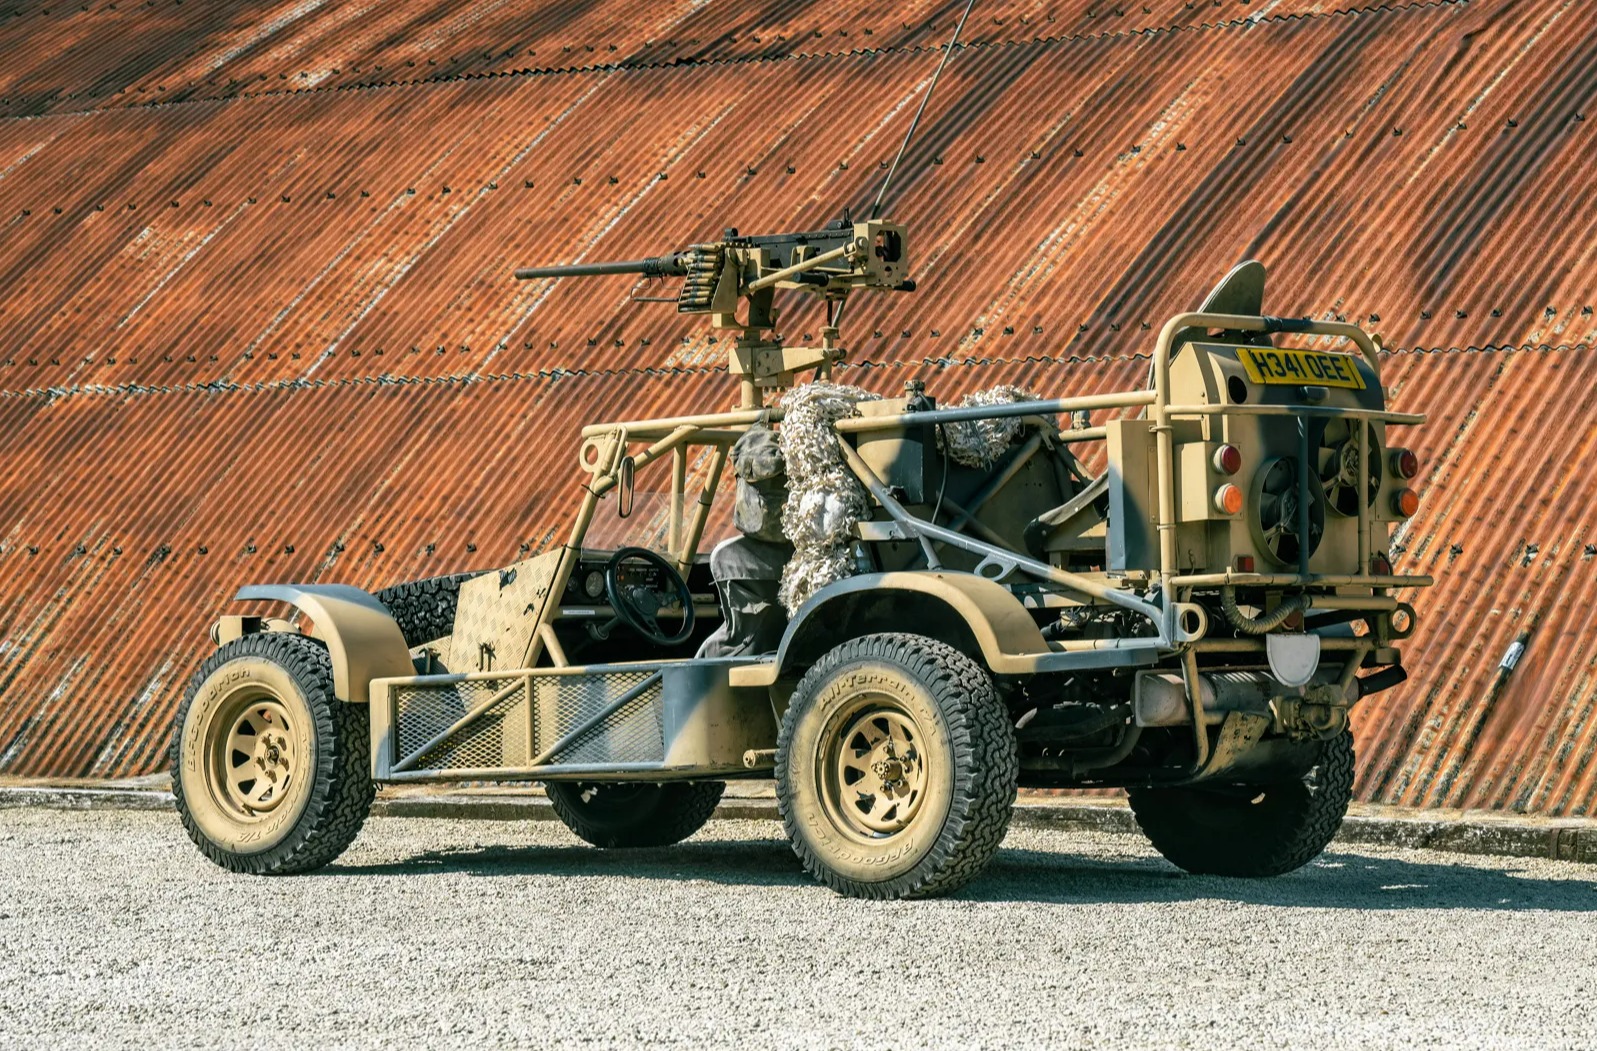 Das Ricardo Light Strike Vehicle von 1990 wurde während des Golfkriegs eingesetzt, wurde jedoch seitdem in seiner ursprünglichen Spezifikation restauriert